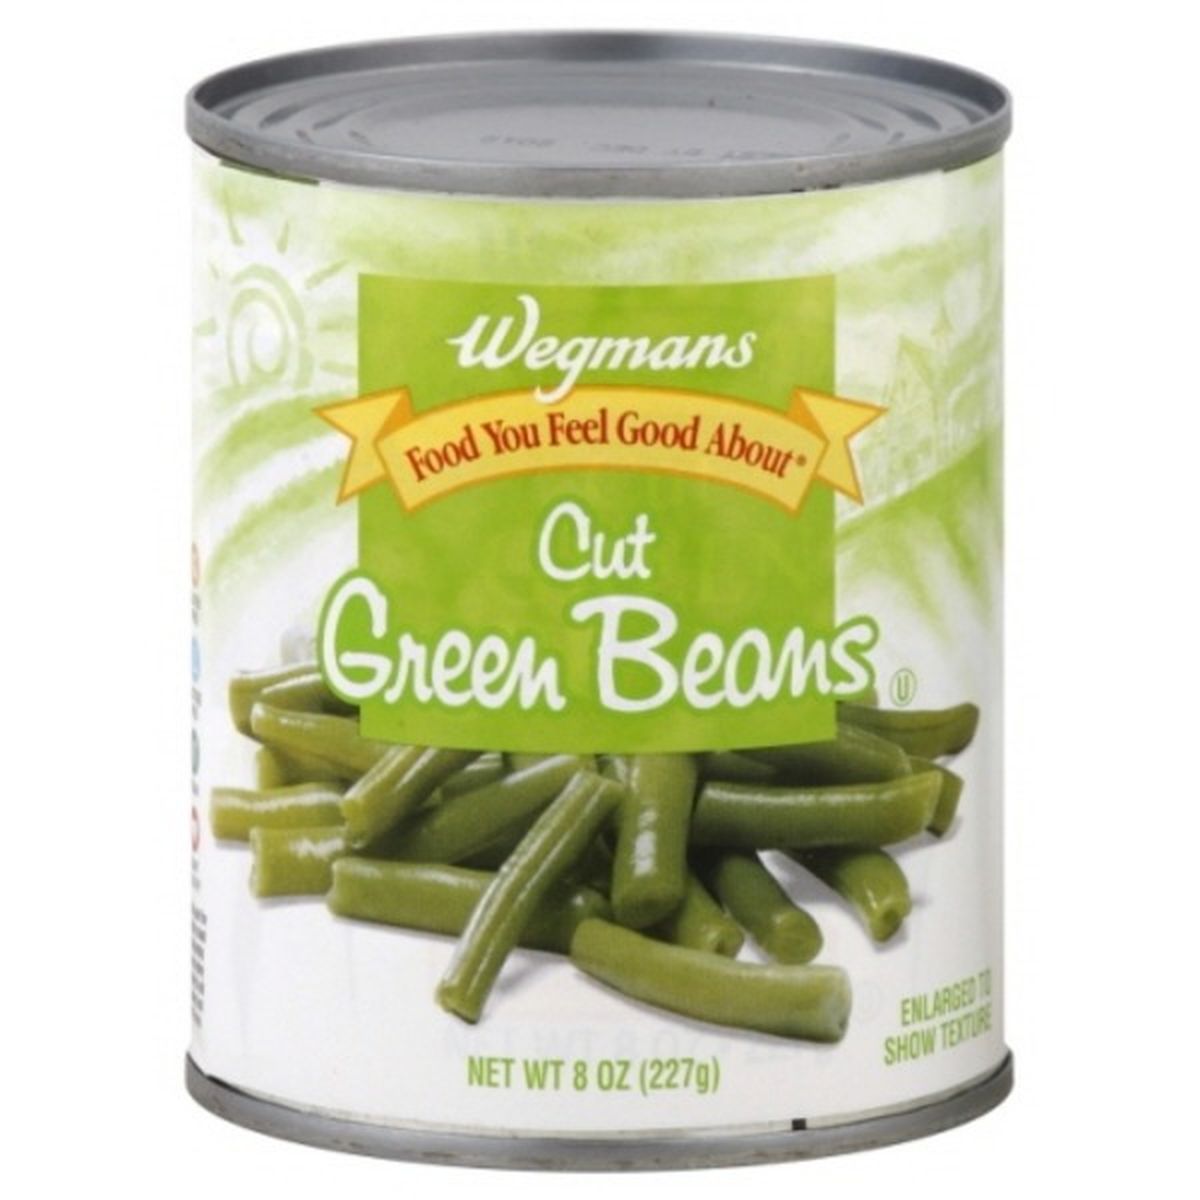 Calories in Wegmans Cut Green Beans